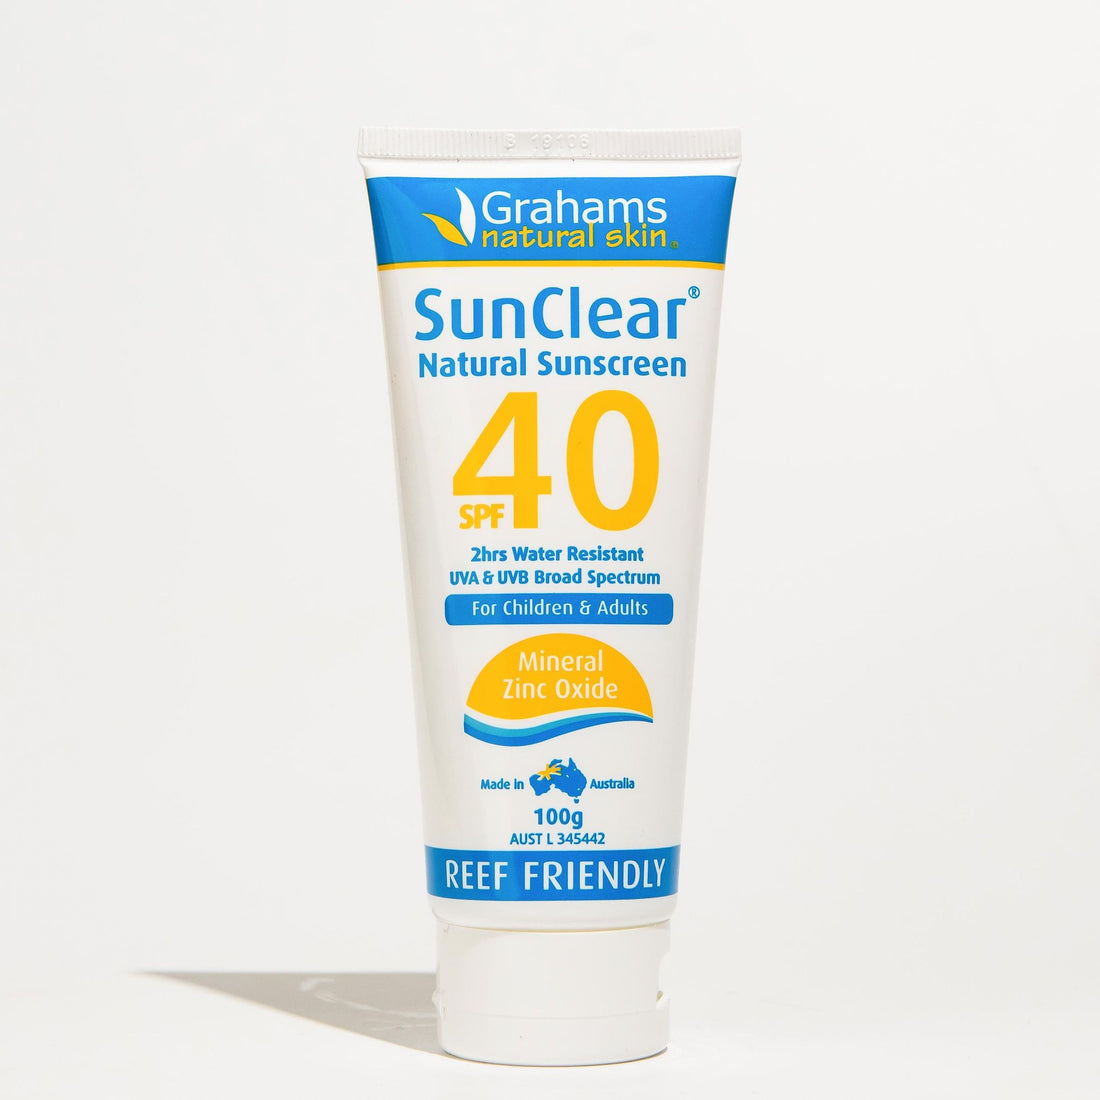 SunClear Natural Sunscreen SPF 40